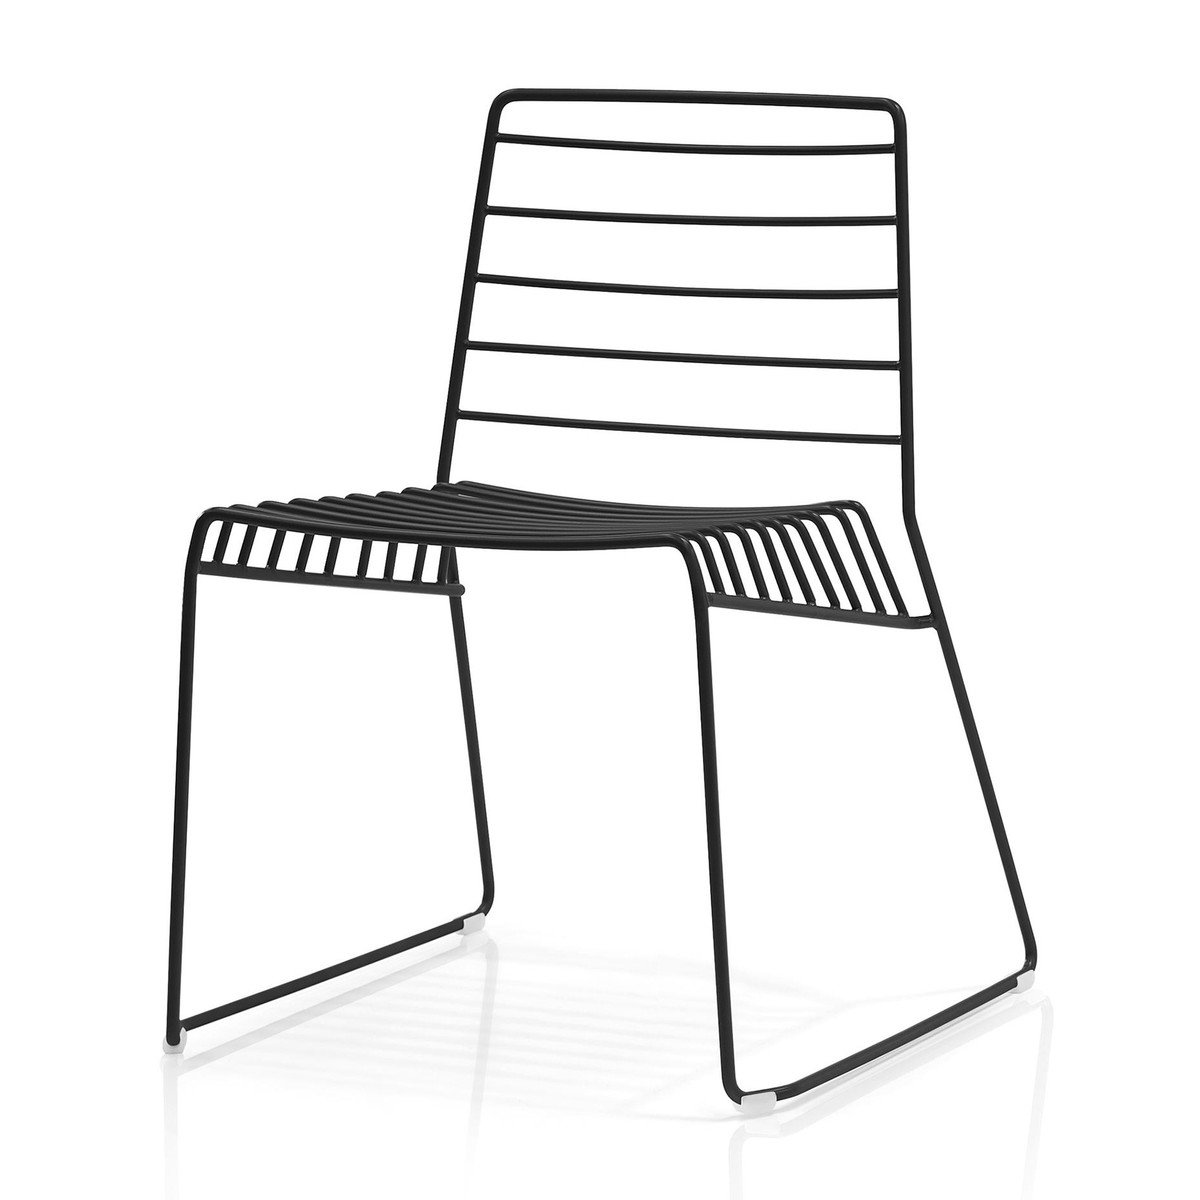 PARK καρέκλα - συσκευασία 2 τεμαχίων